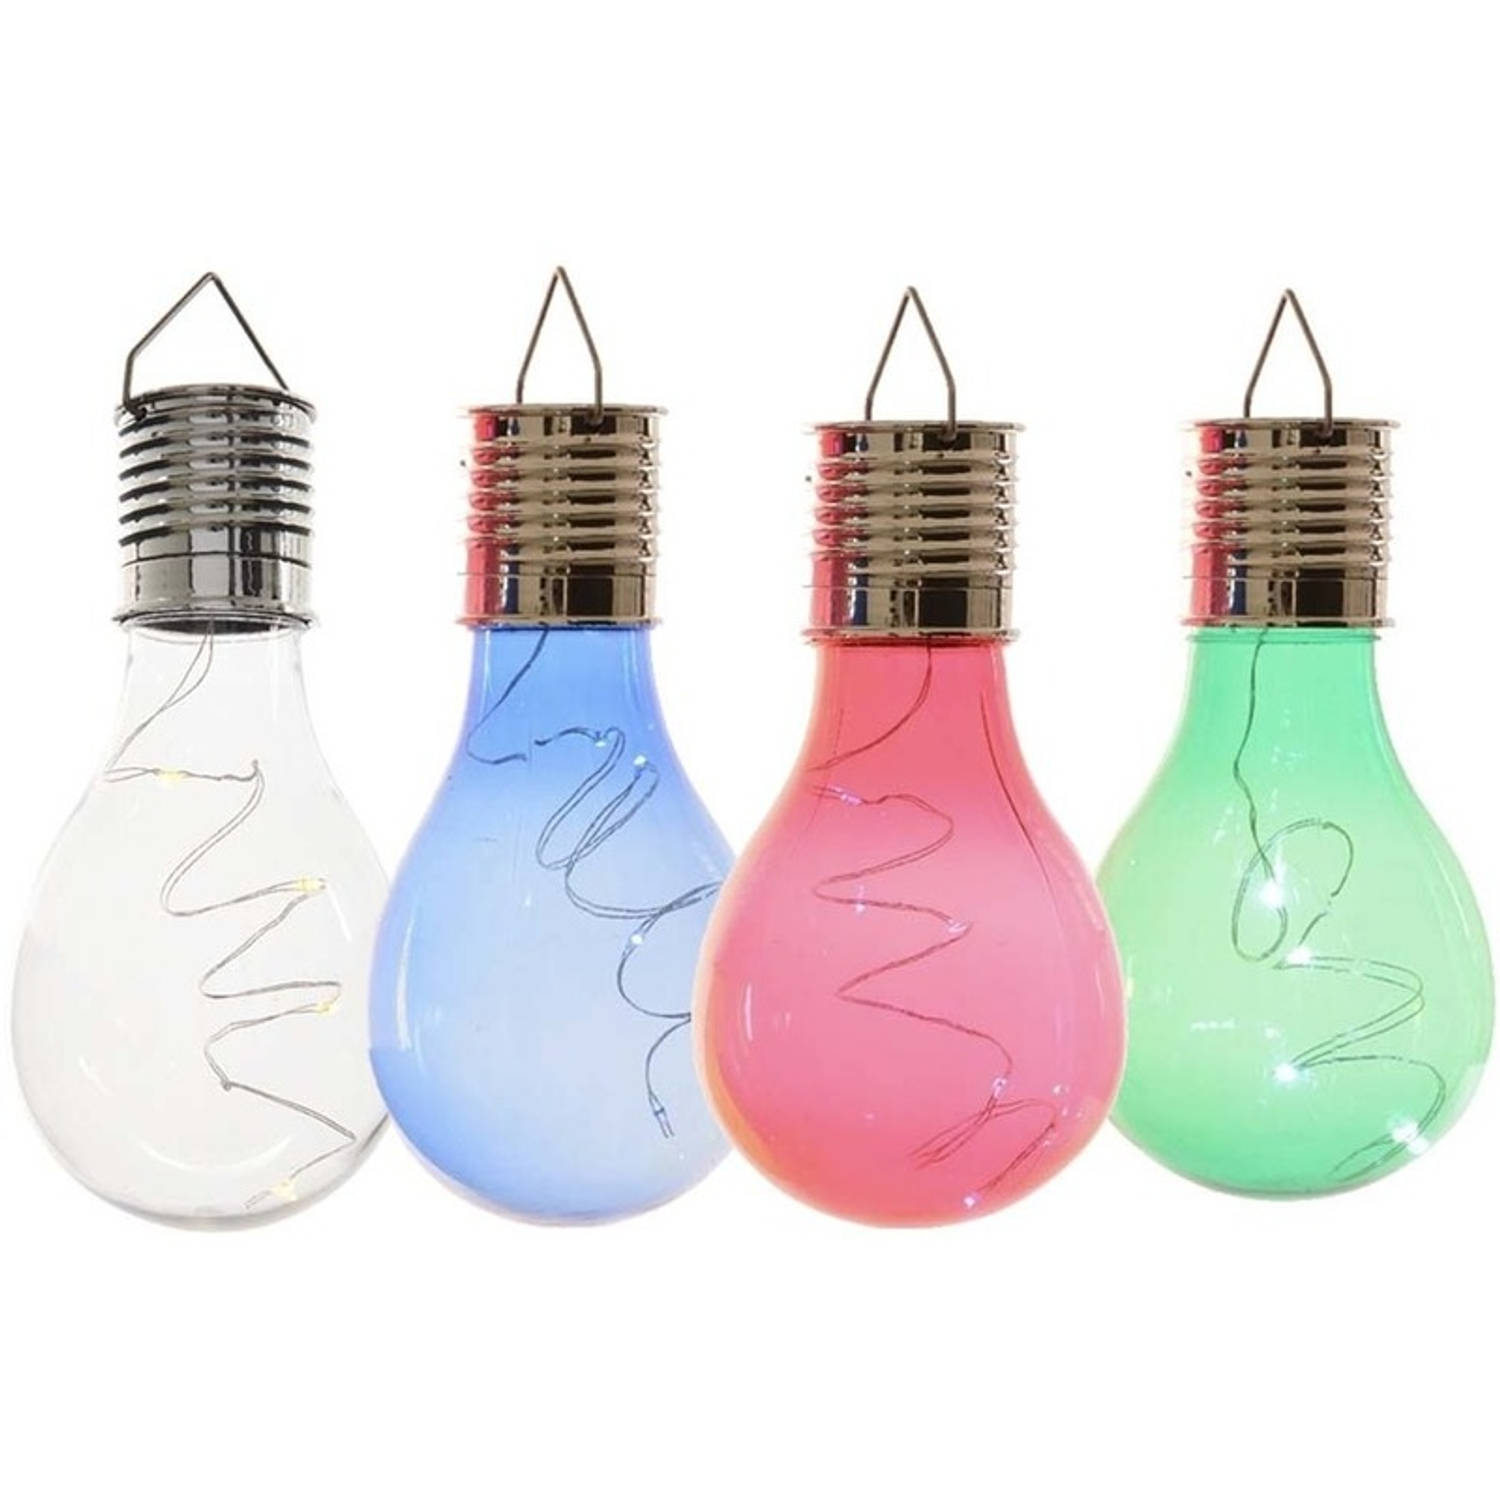 4x Buitenlampen/tuinlampen lampbolletjes/peertjes 14 cm transparant/blauw/groen/rood - Buitenverlichting